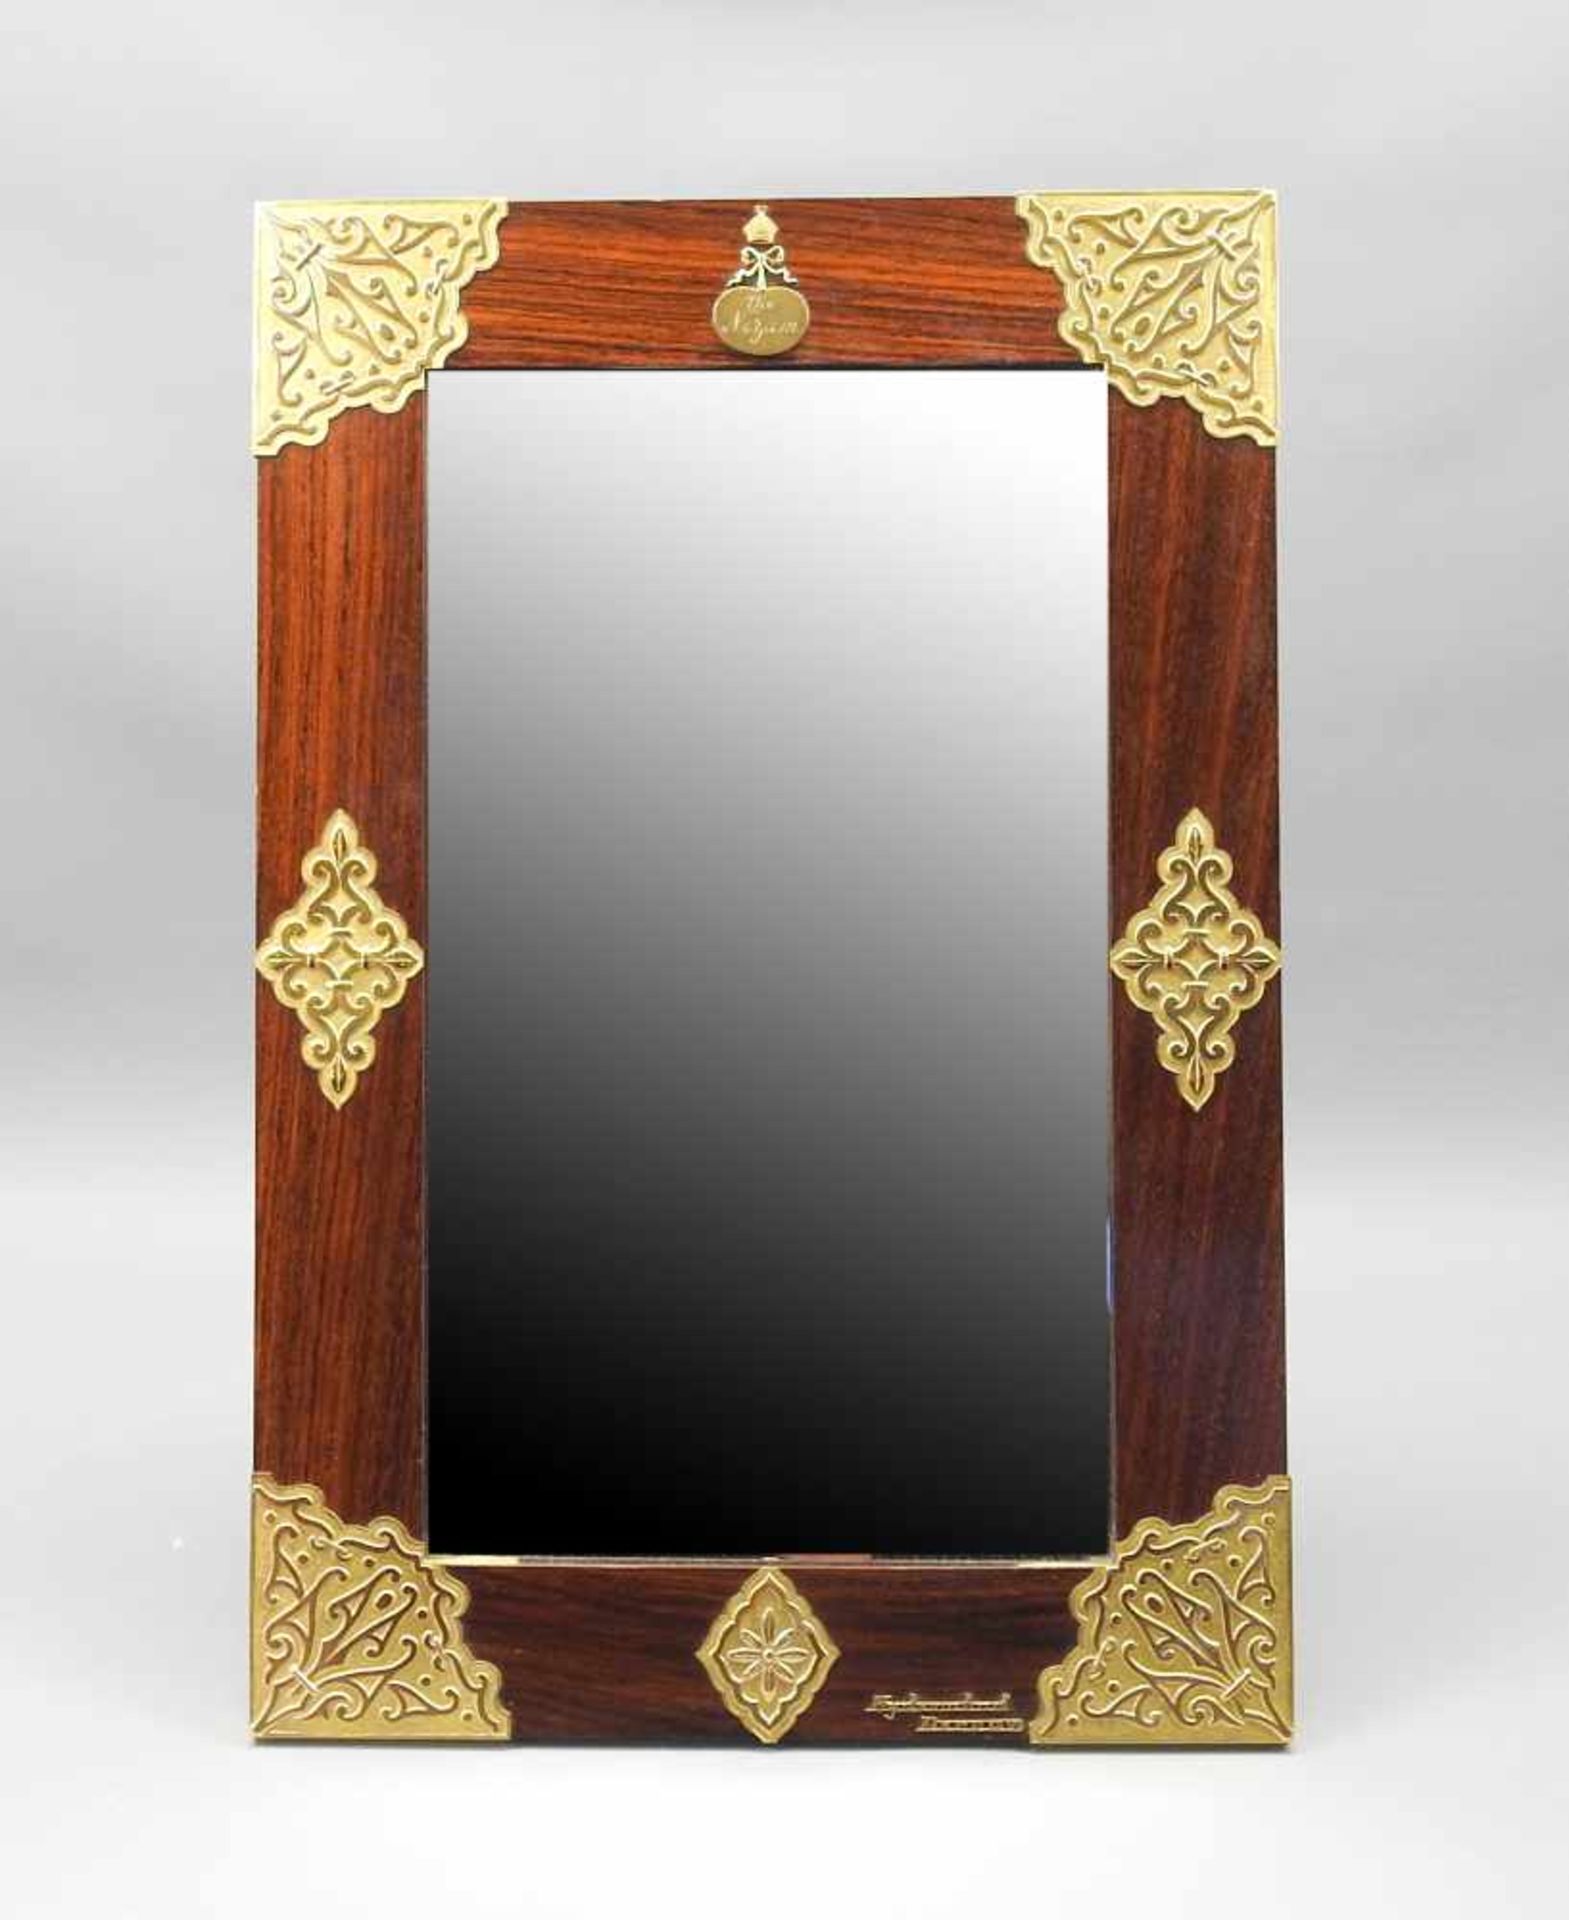 Spiegel des englischen Königshauses18 K. Gelb-Gold/Spiegelglas/Edelholzrahmen. Gold punziert mit